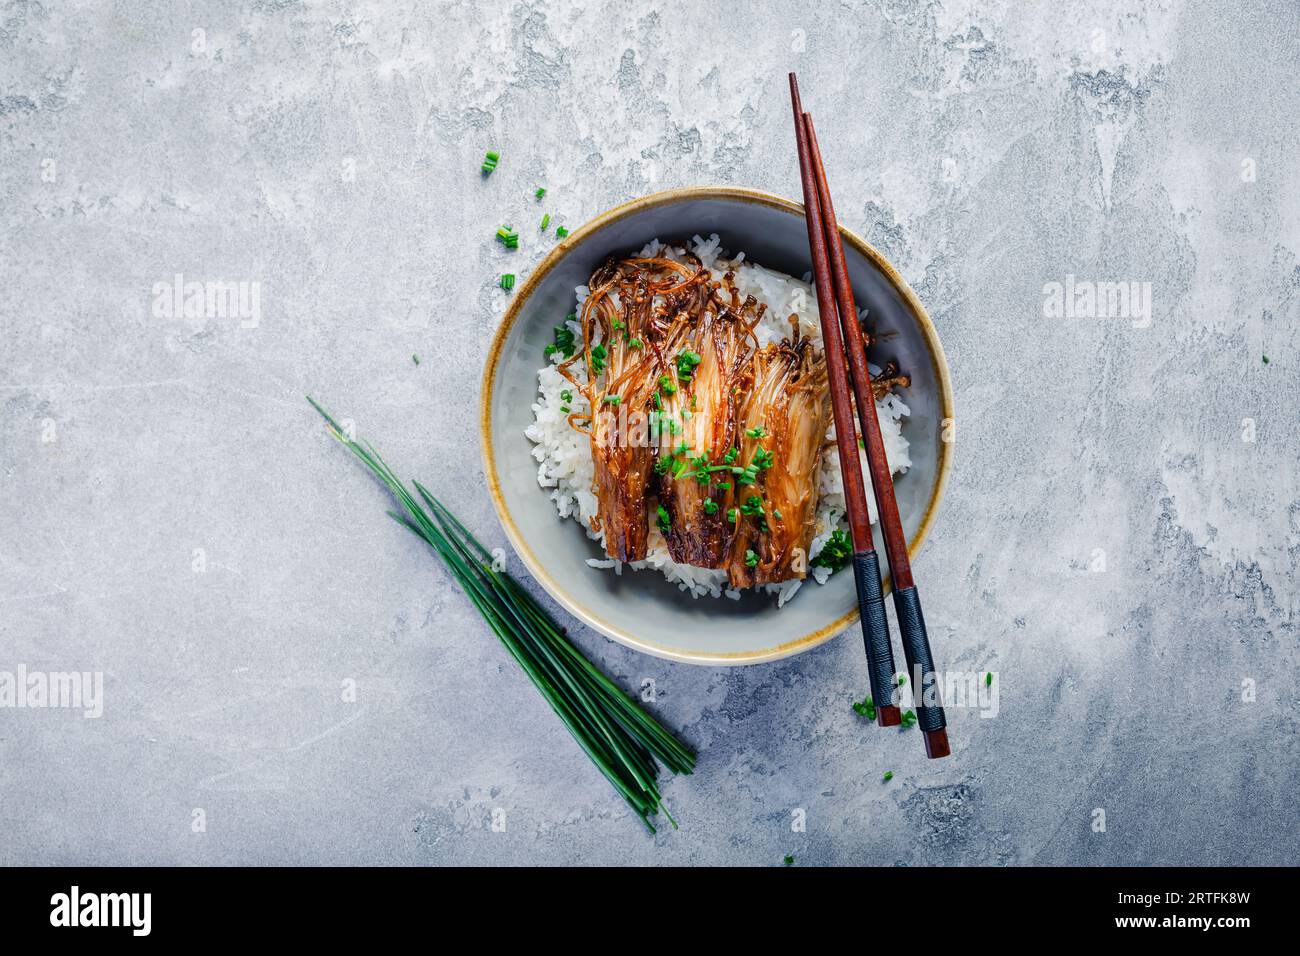 Riz aux champignons enoki et ciboulette. Repas diététique végétalien asiatique. Banque D'Images